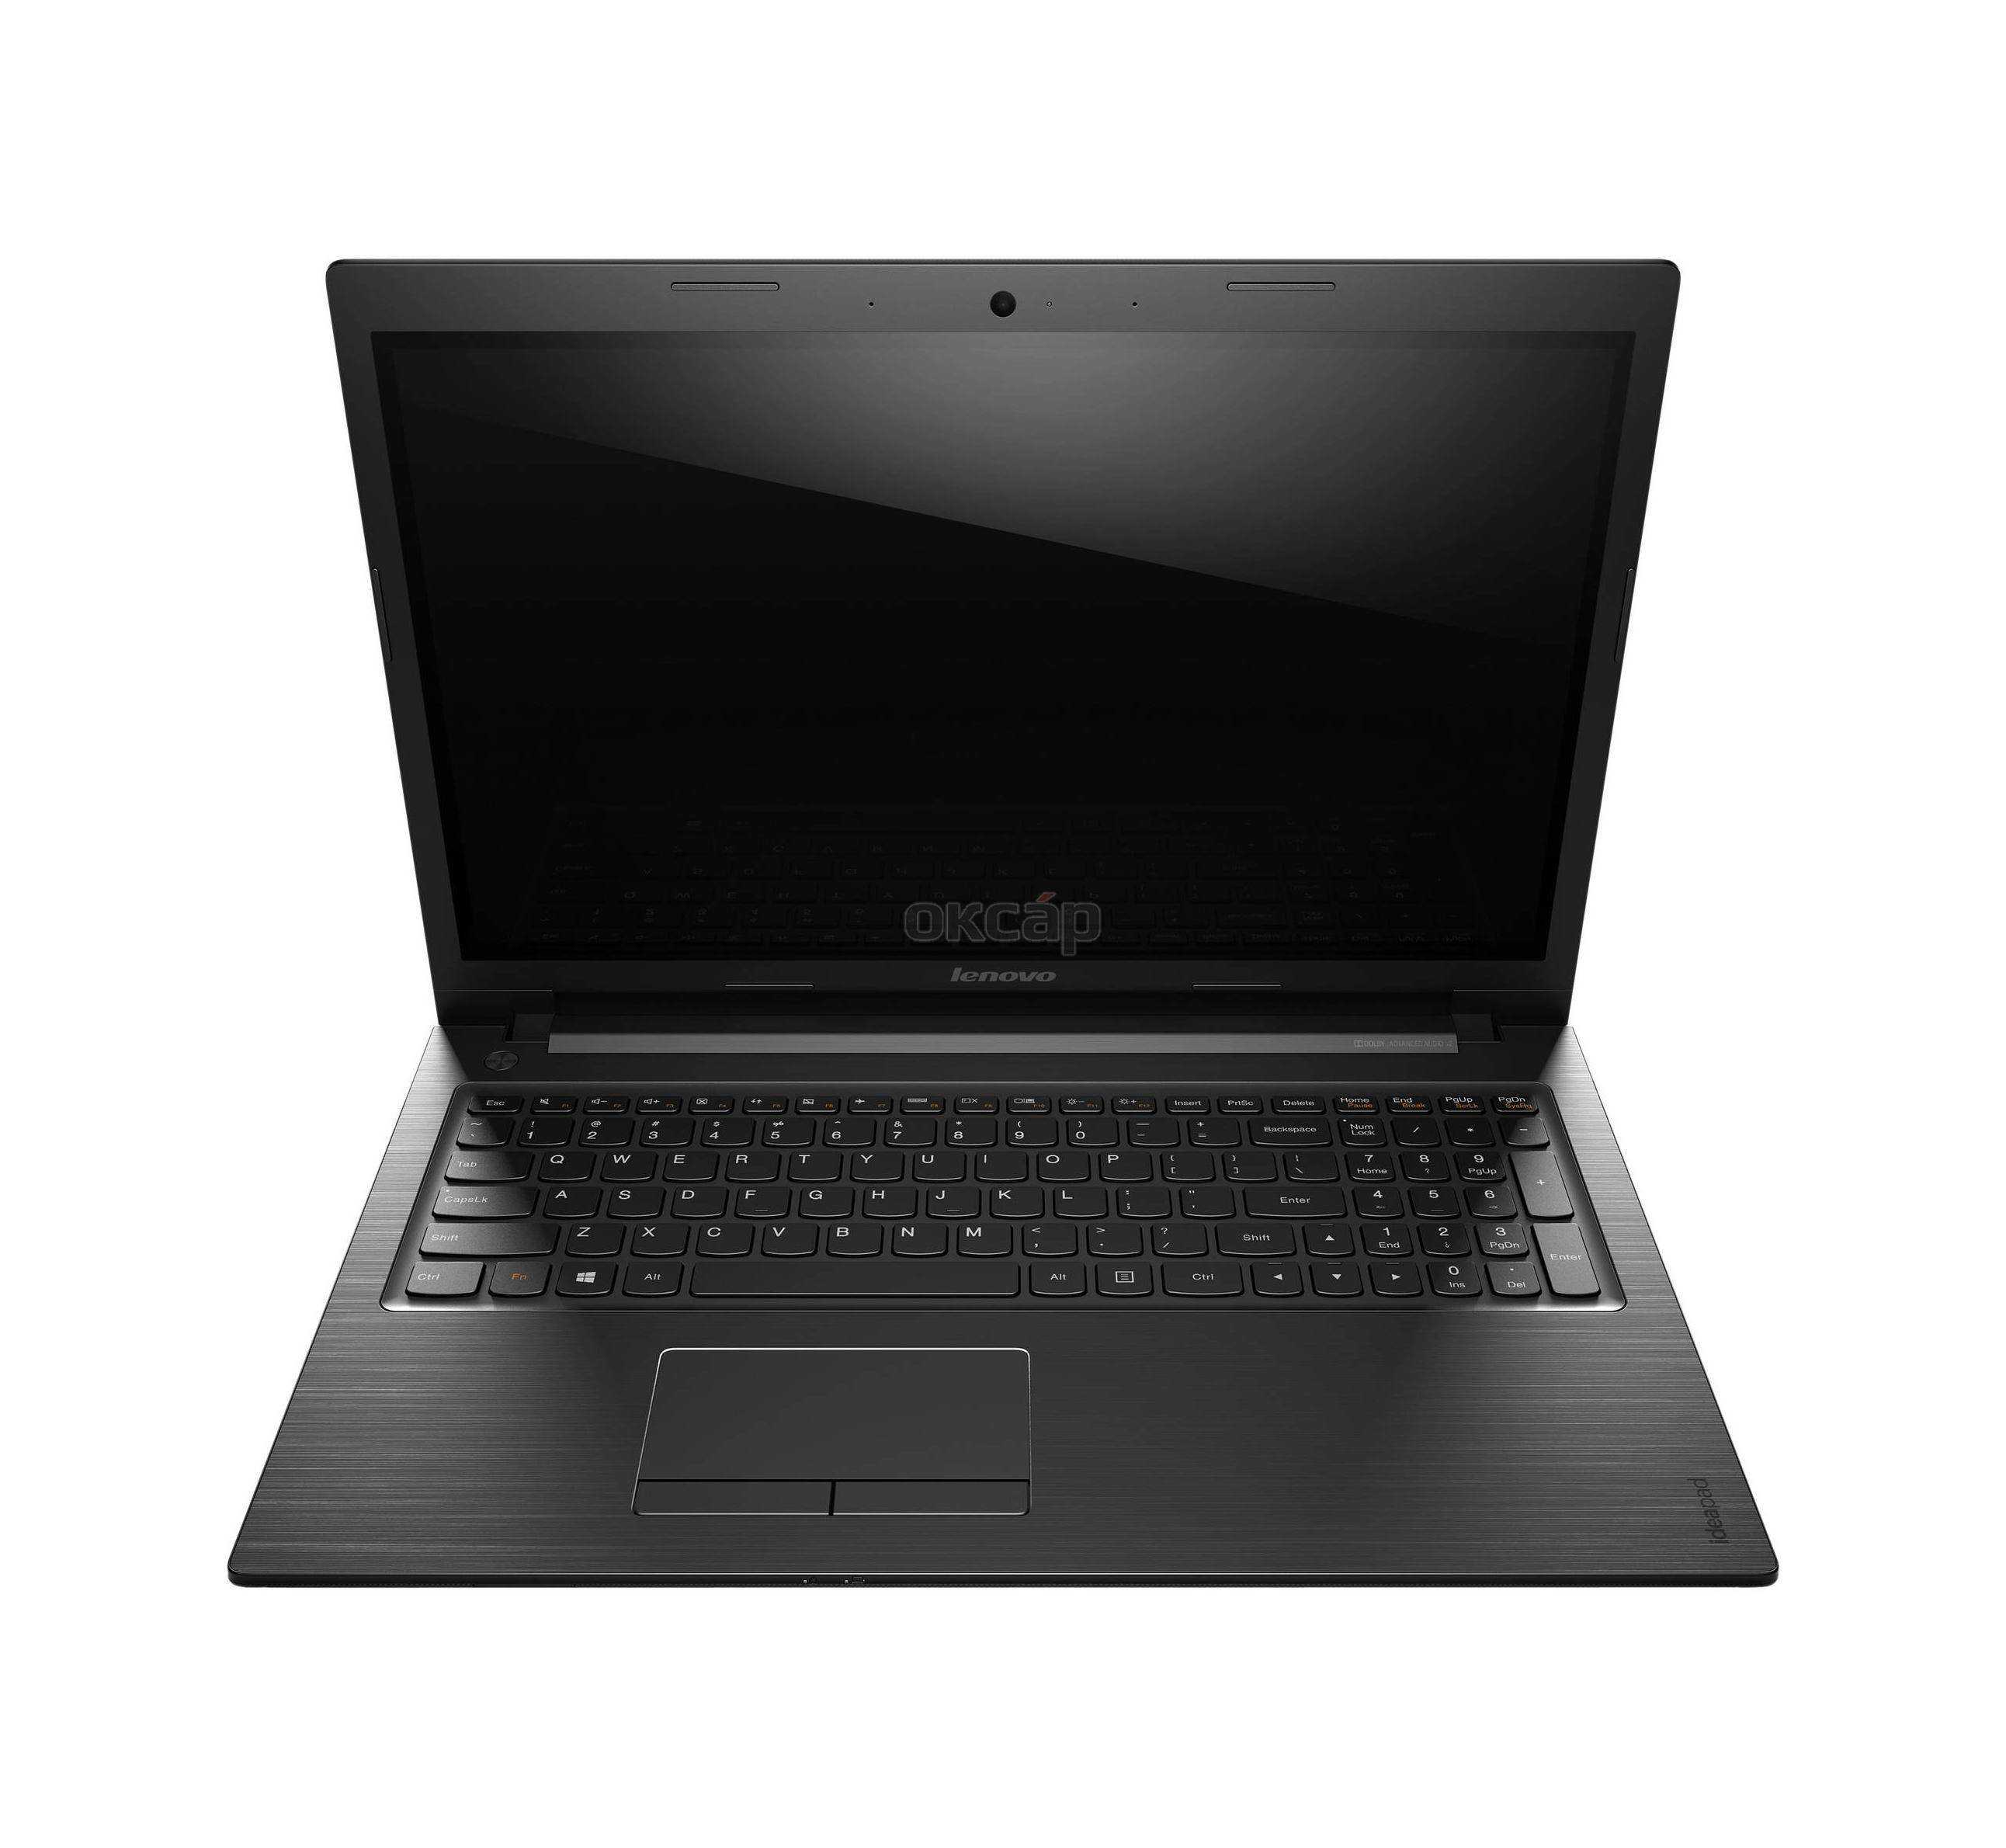 Ноутбук lenovo ideapad s510p — купить, цена и характеристики, отзывы